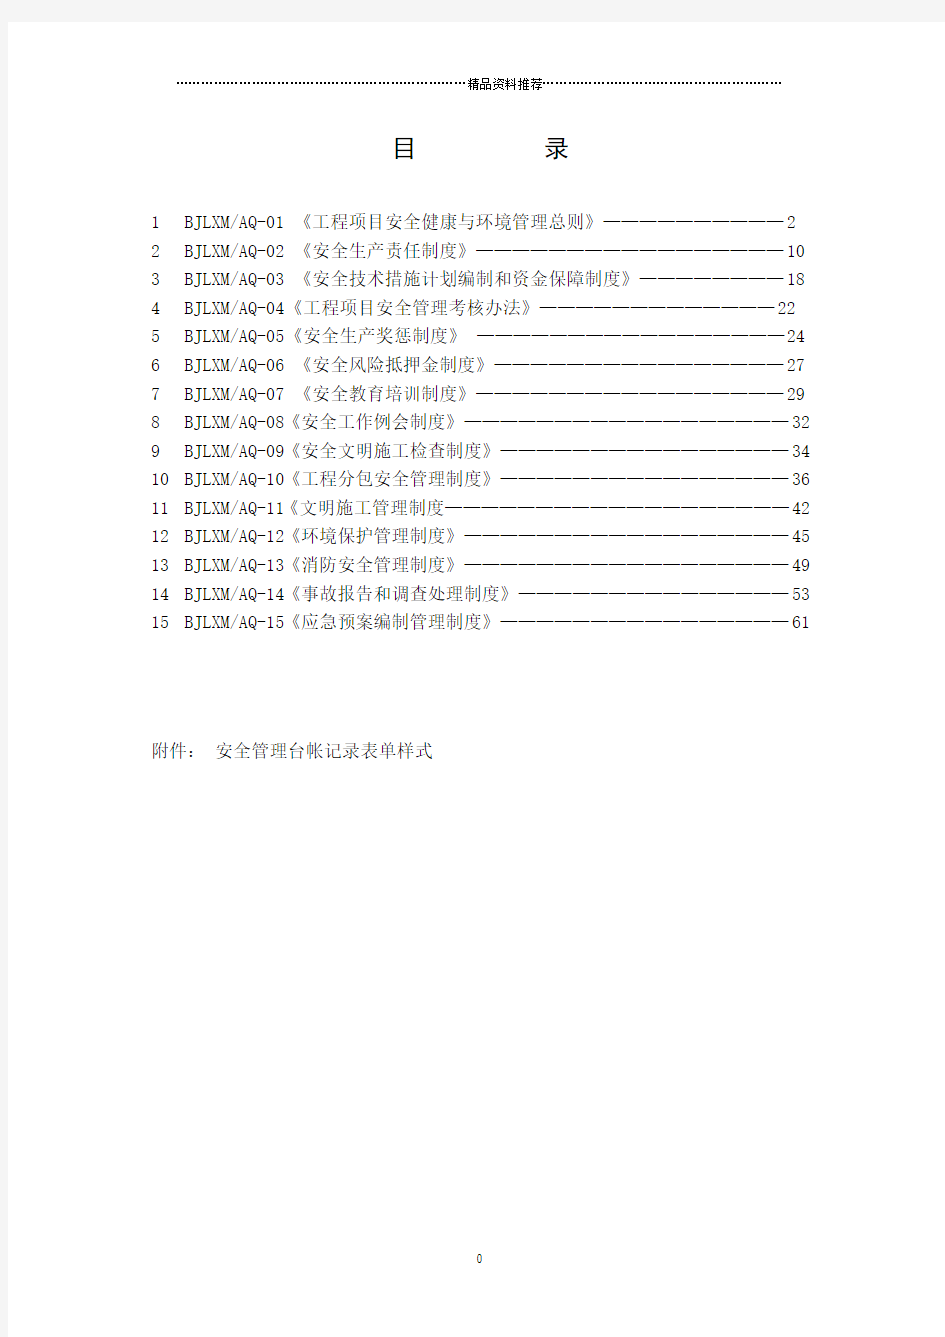 北京朗新明环保科技有限公司安全管理制度汇编